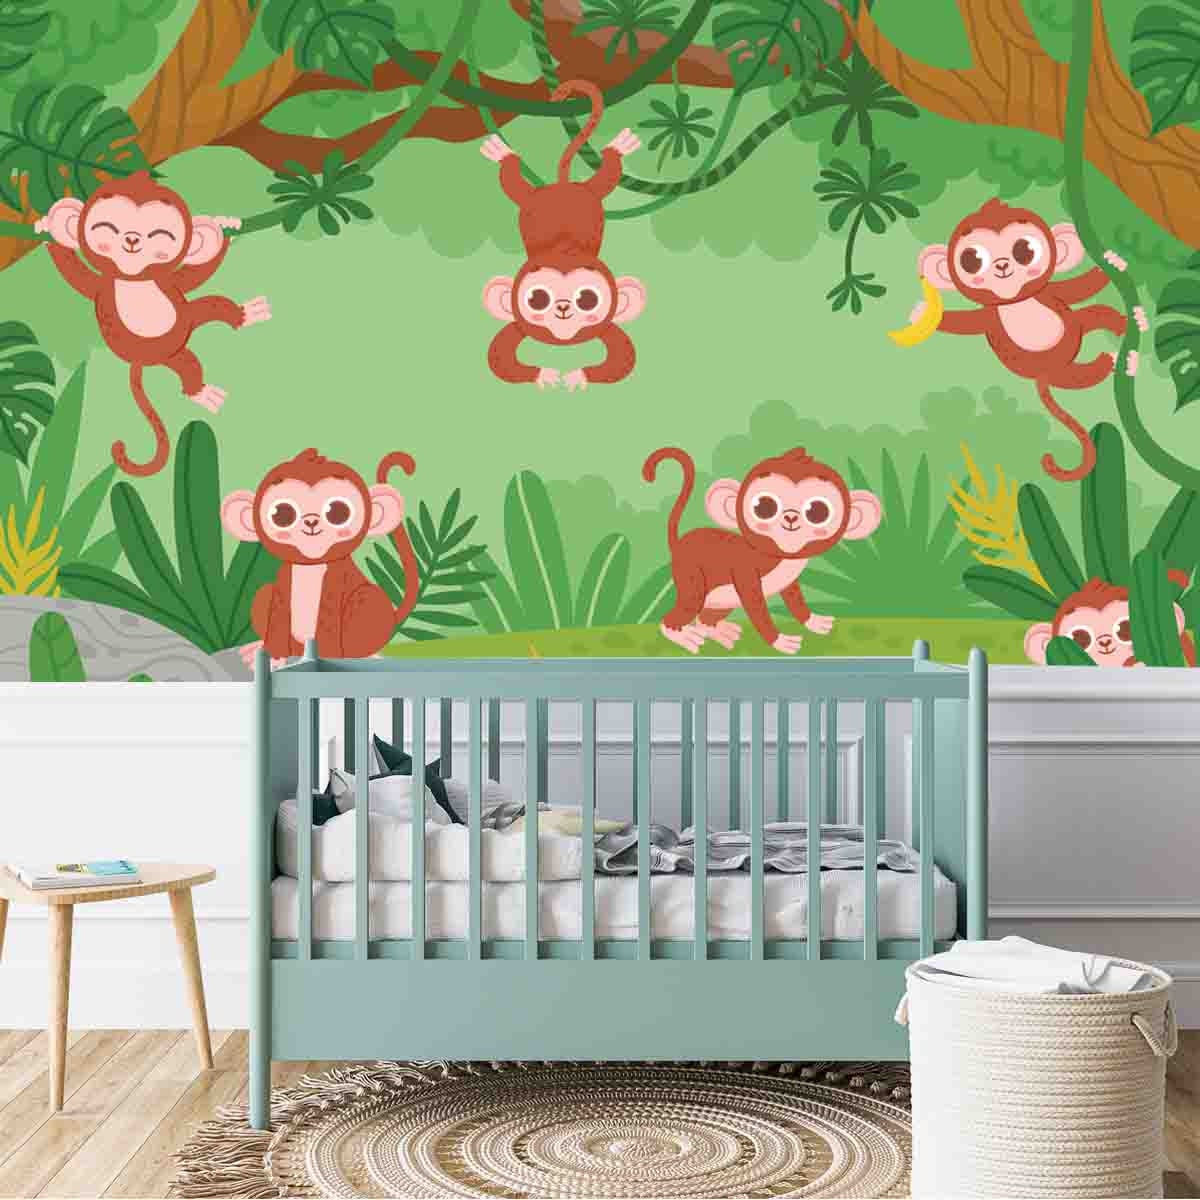 Cute Monkeys Hanging on Lianas Trees in Jungle Forest Wallpaper Nursery Mural